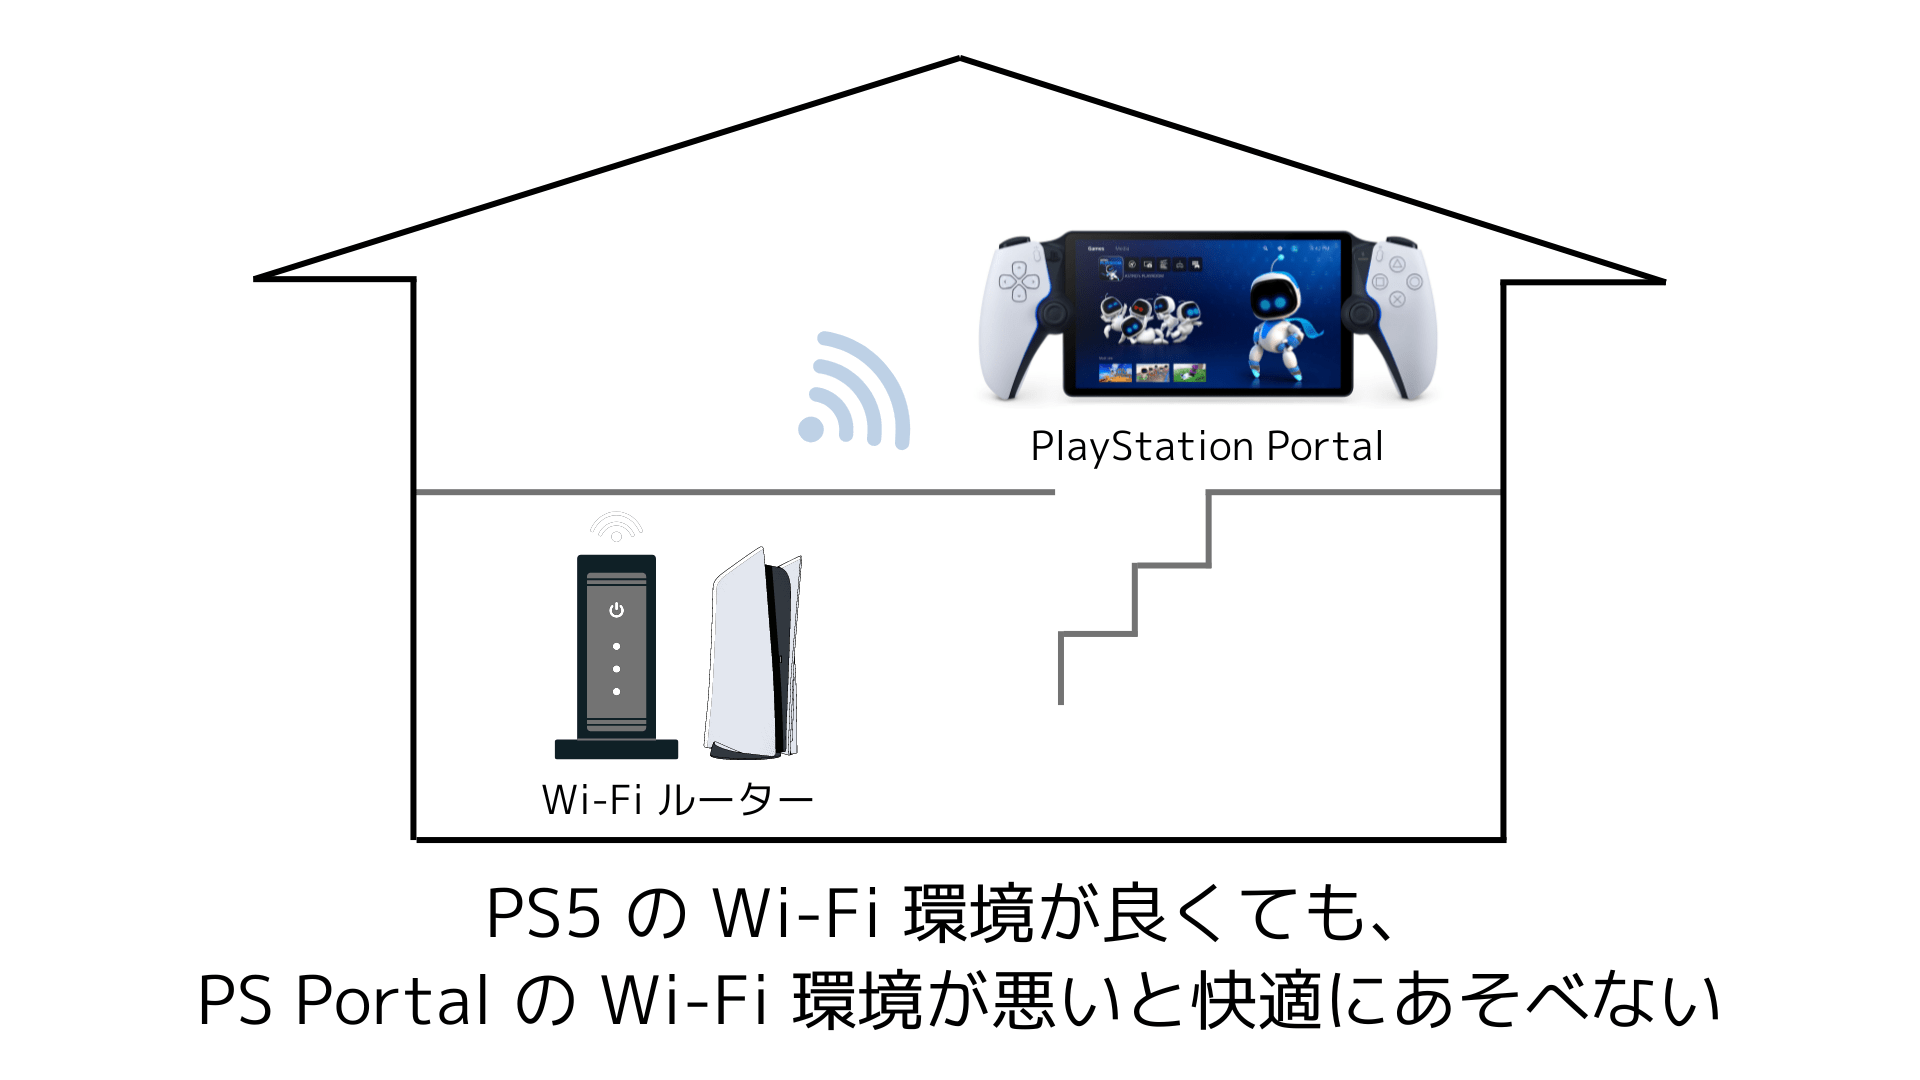 1 階に Wi-Fi ルーターがあり、2 階に PlayStation Portal があるイメージ